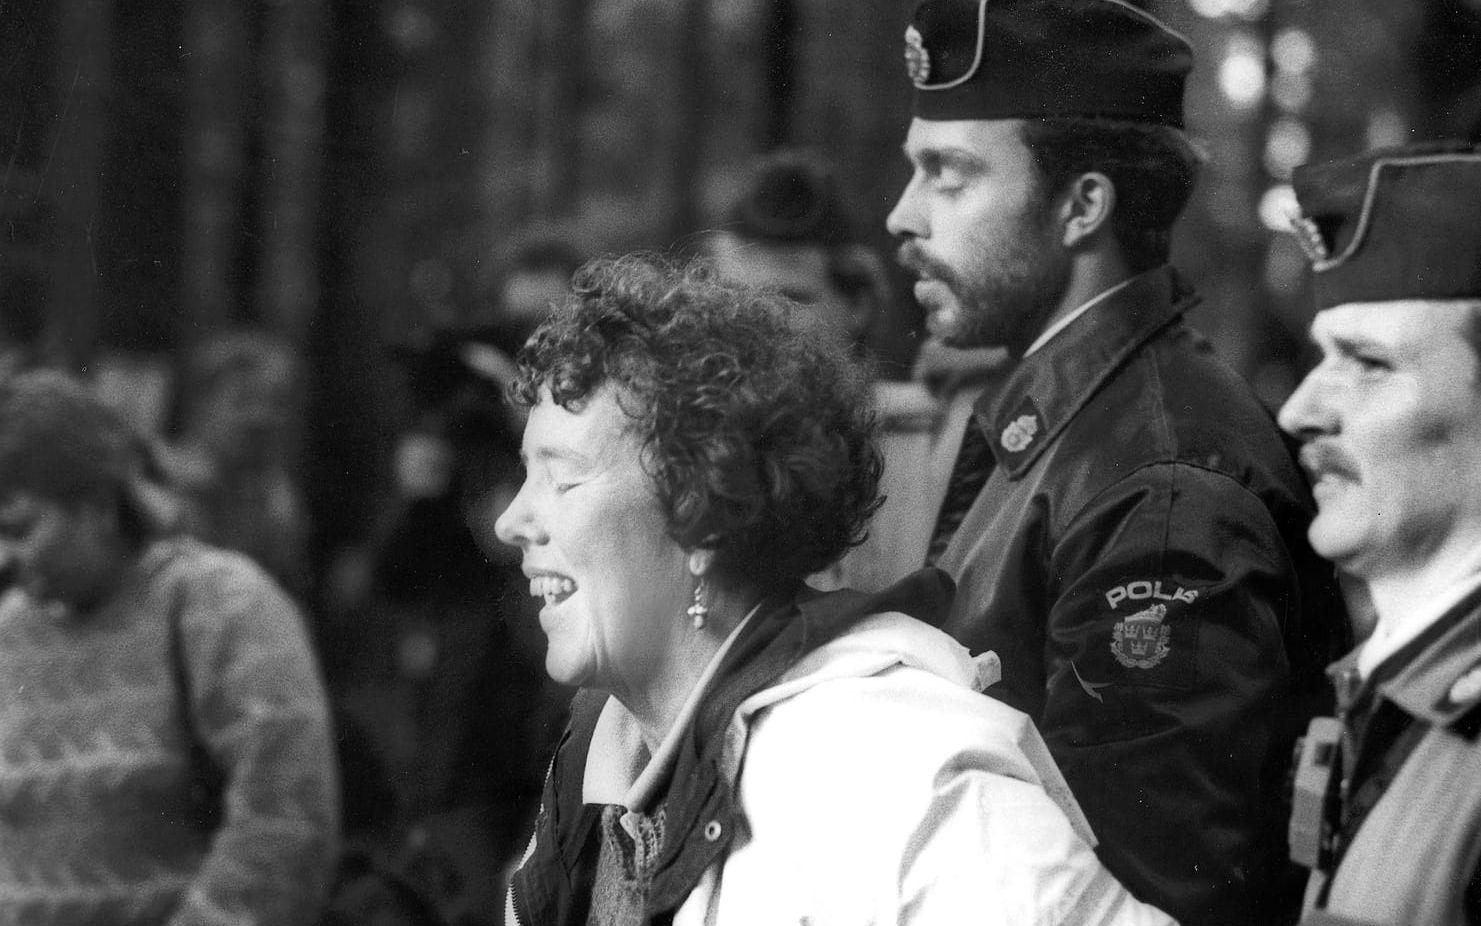 Ödsmål 1987-10 13. Ulla Britt Gustafsson (s) transporteras bort från protesterna under Ödsmålsbron.